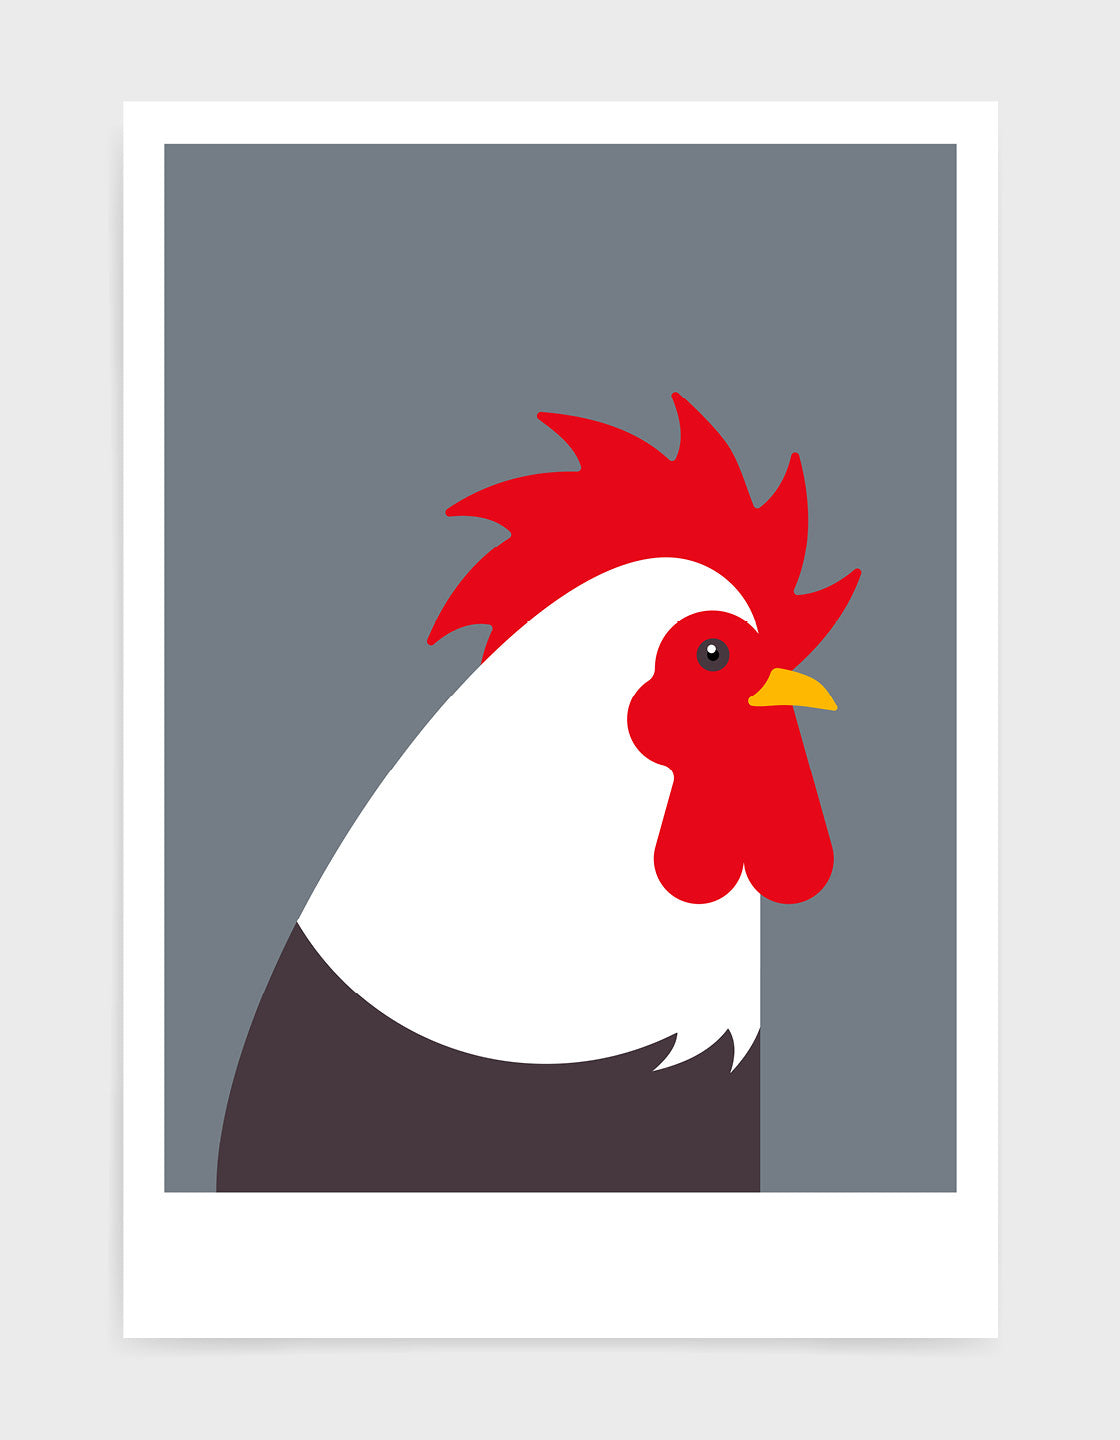 Modern cockerel / chicken illustration against a dark grey background